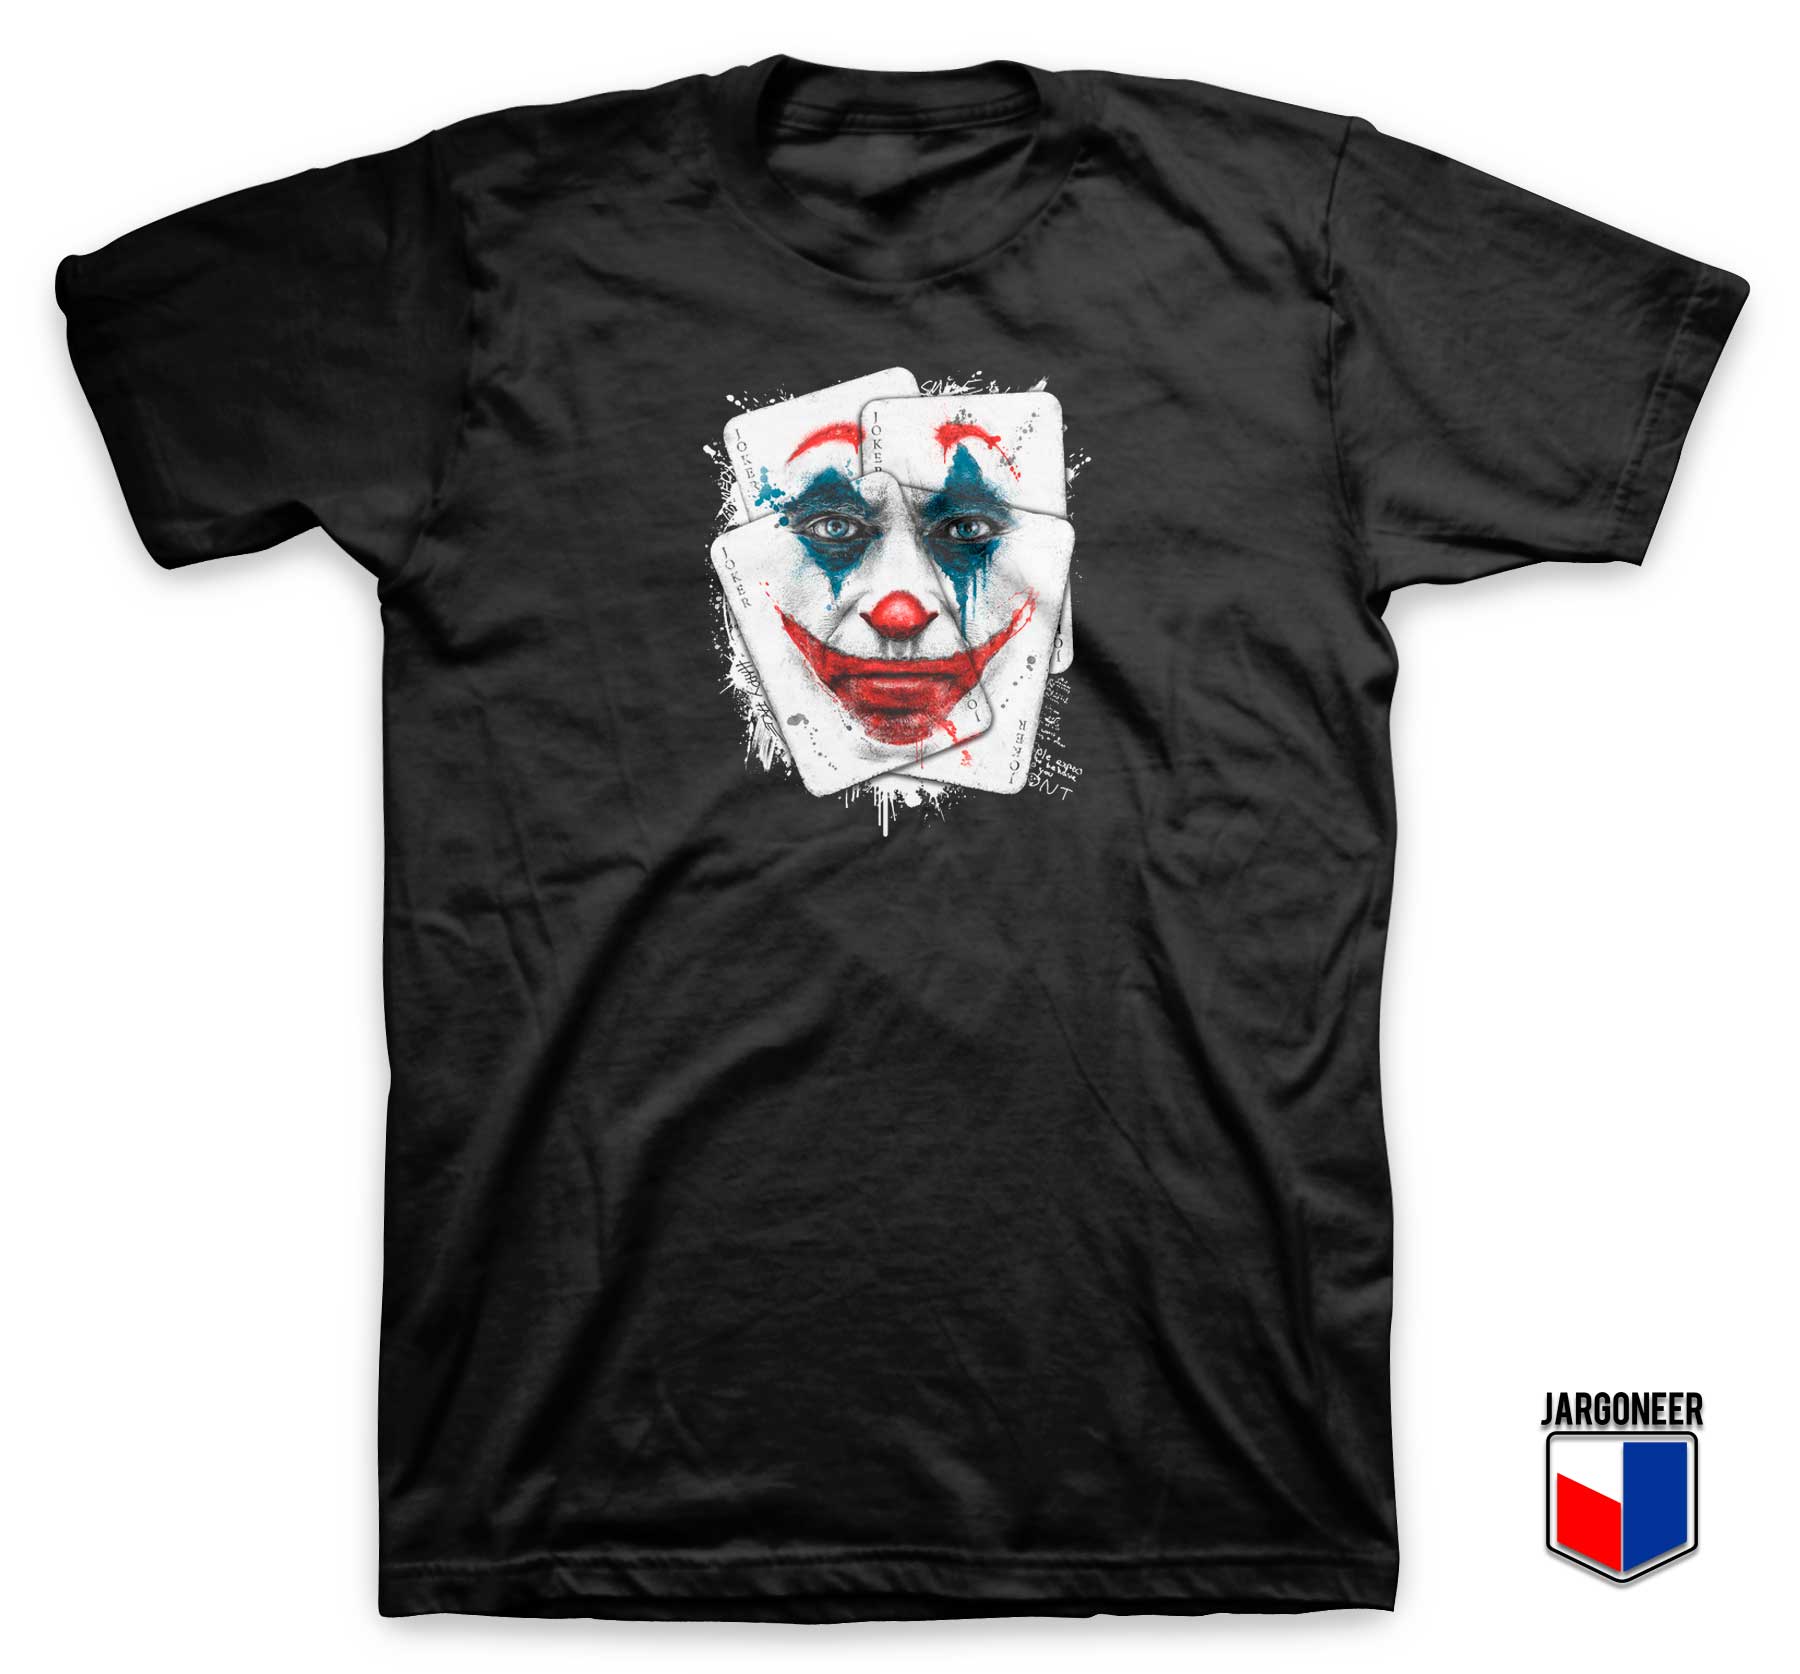 DC Comic Smile Joker Card T Shirt - Shop Unique Graphic Cool Shirt Designs